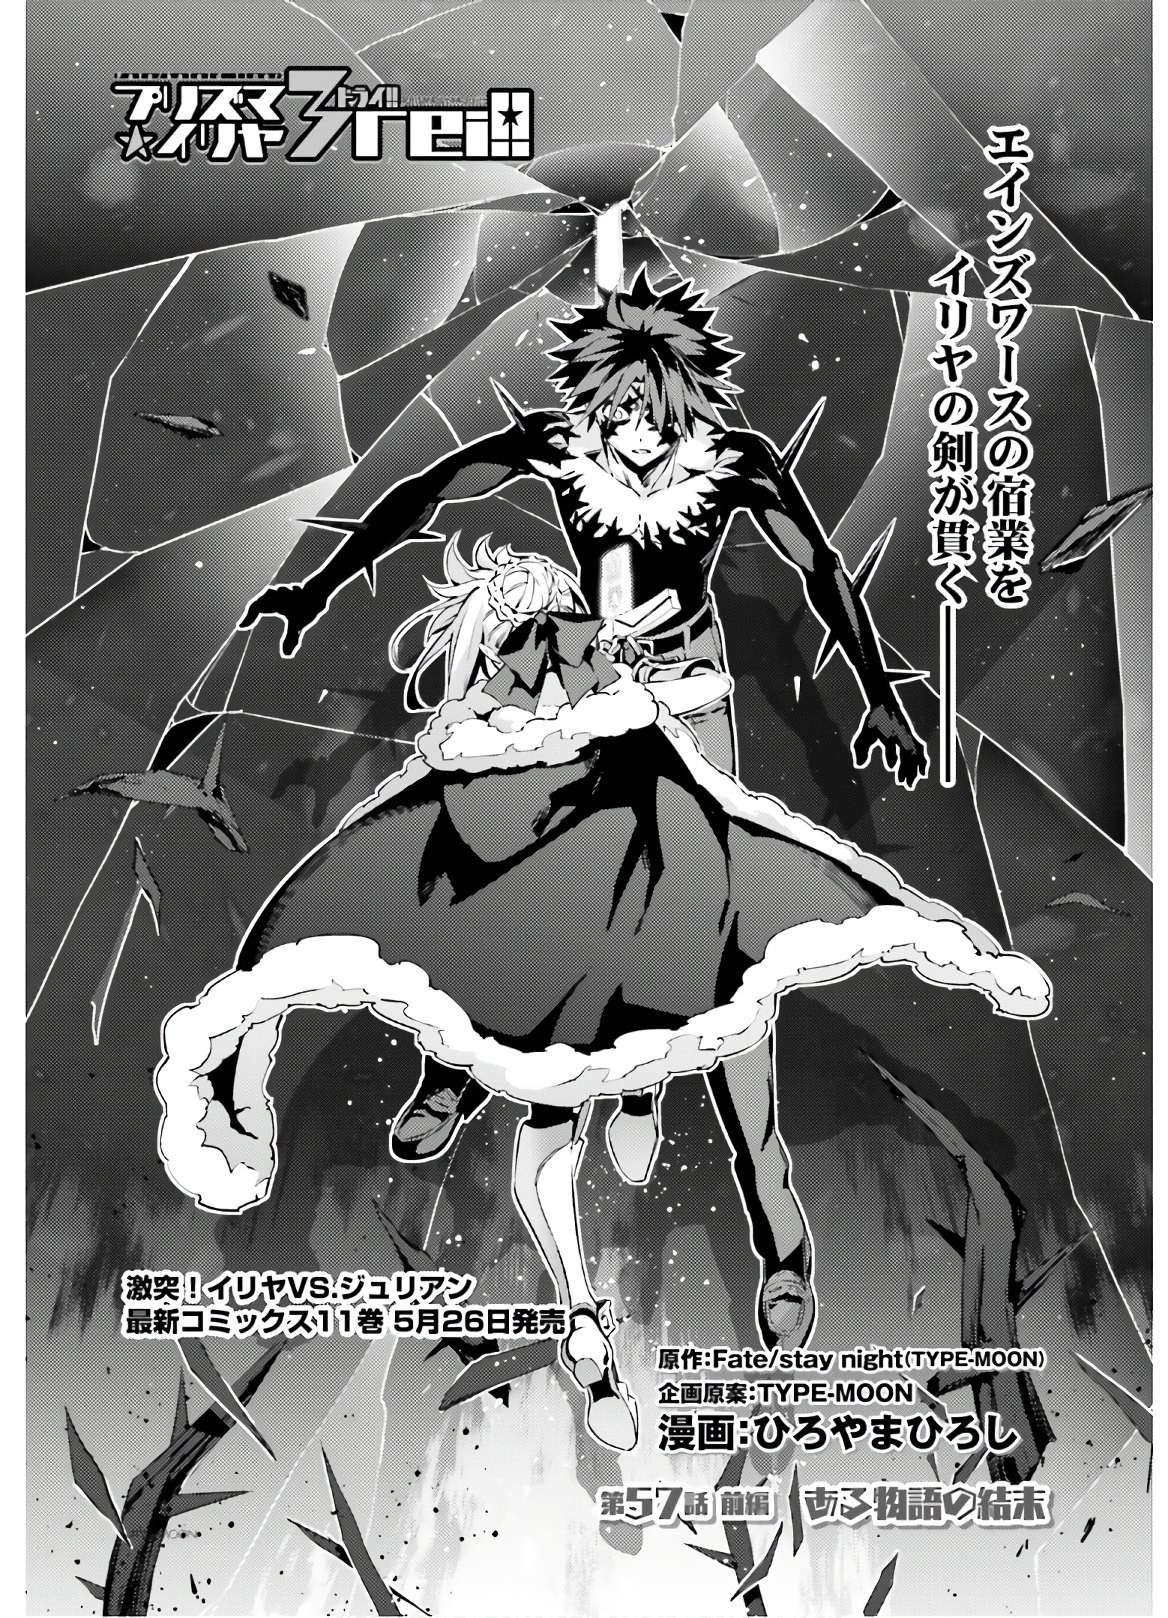 Fate Kaleid Liner Prisma Illya Drei Chapter 57 1 Page 2 Raw Sen Manga